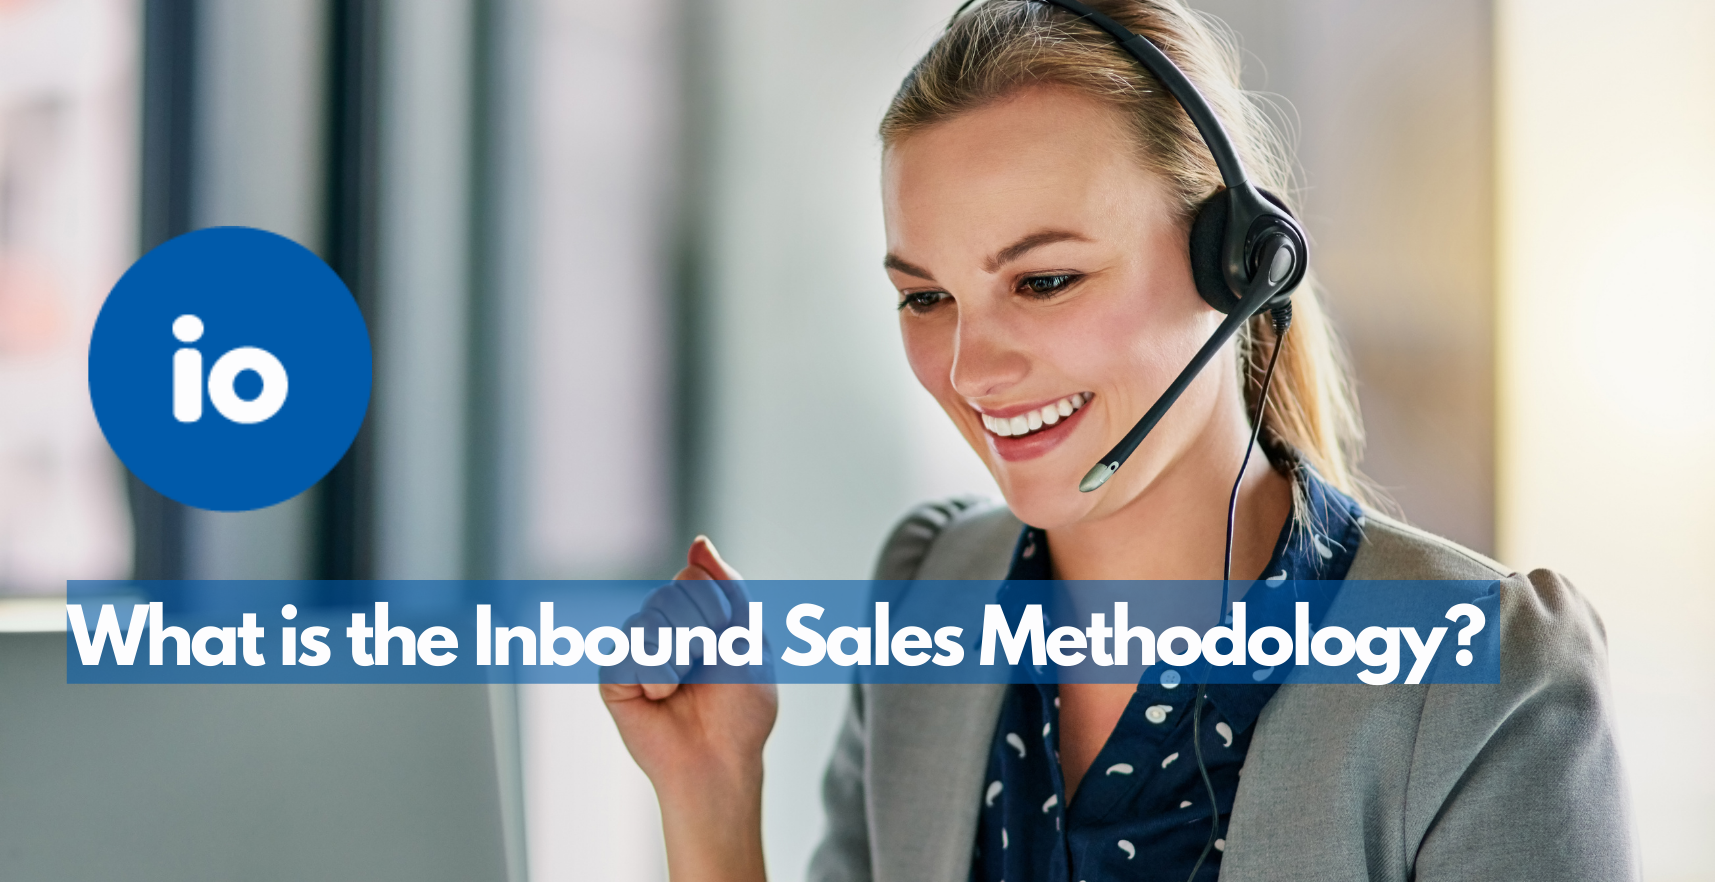 Inbound Sales Methodology